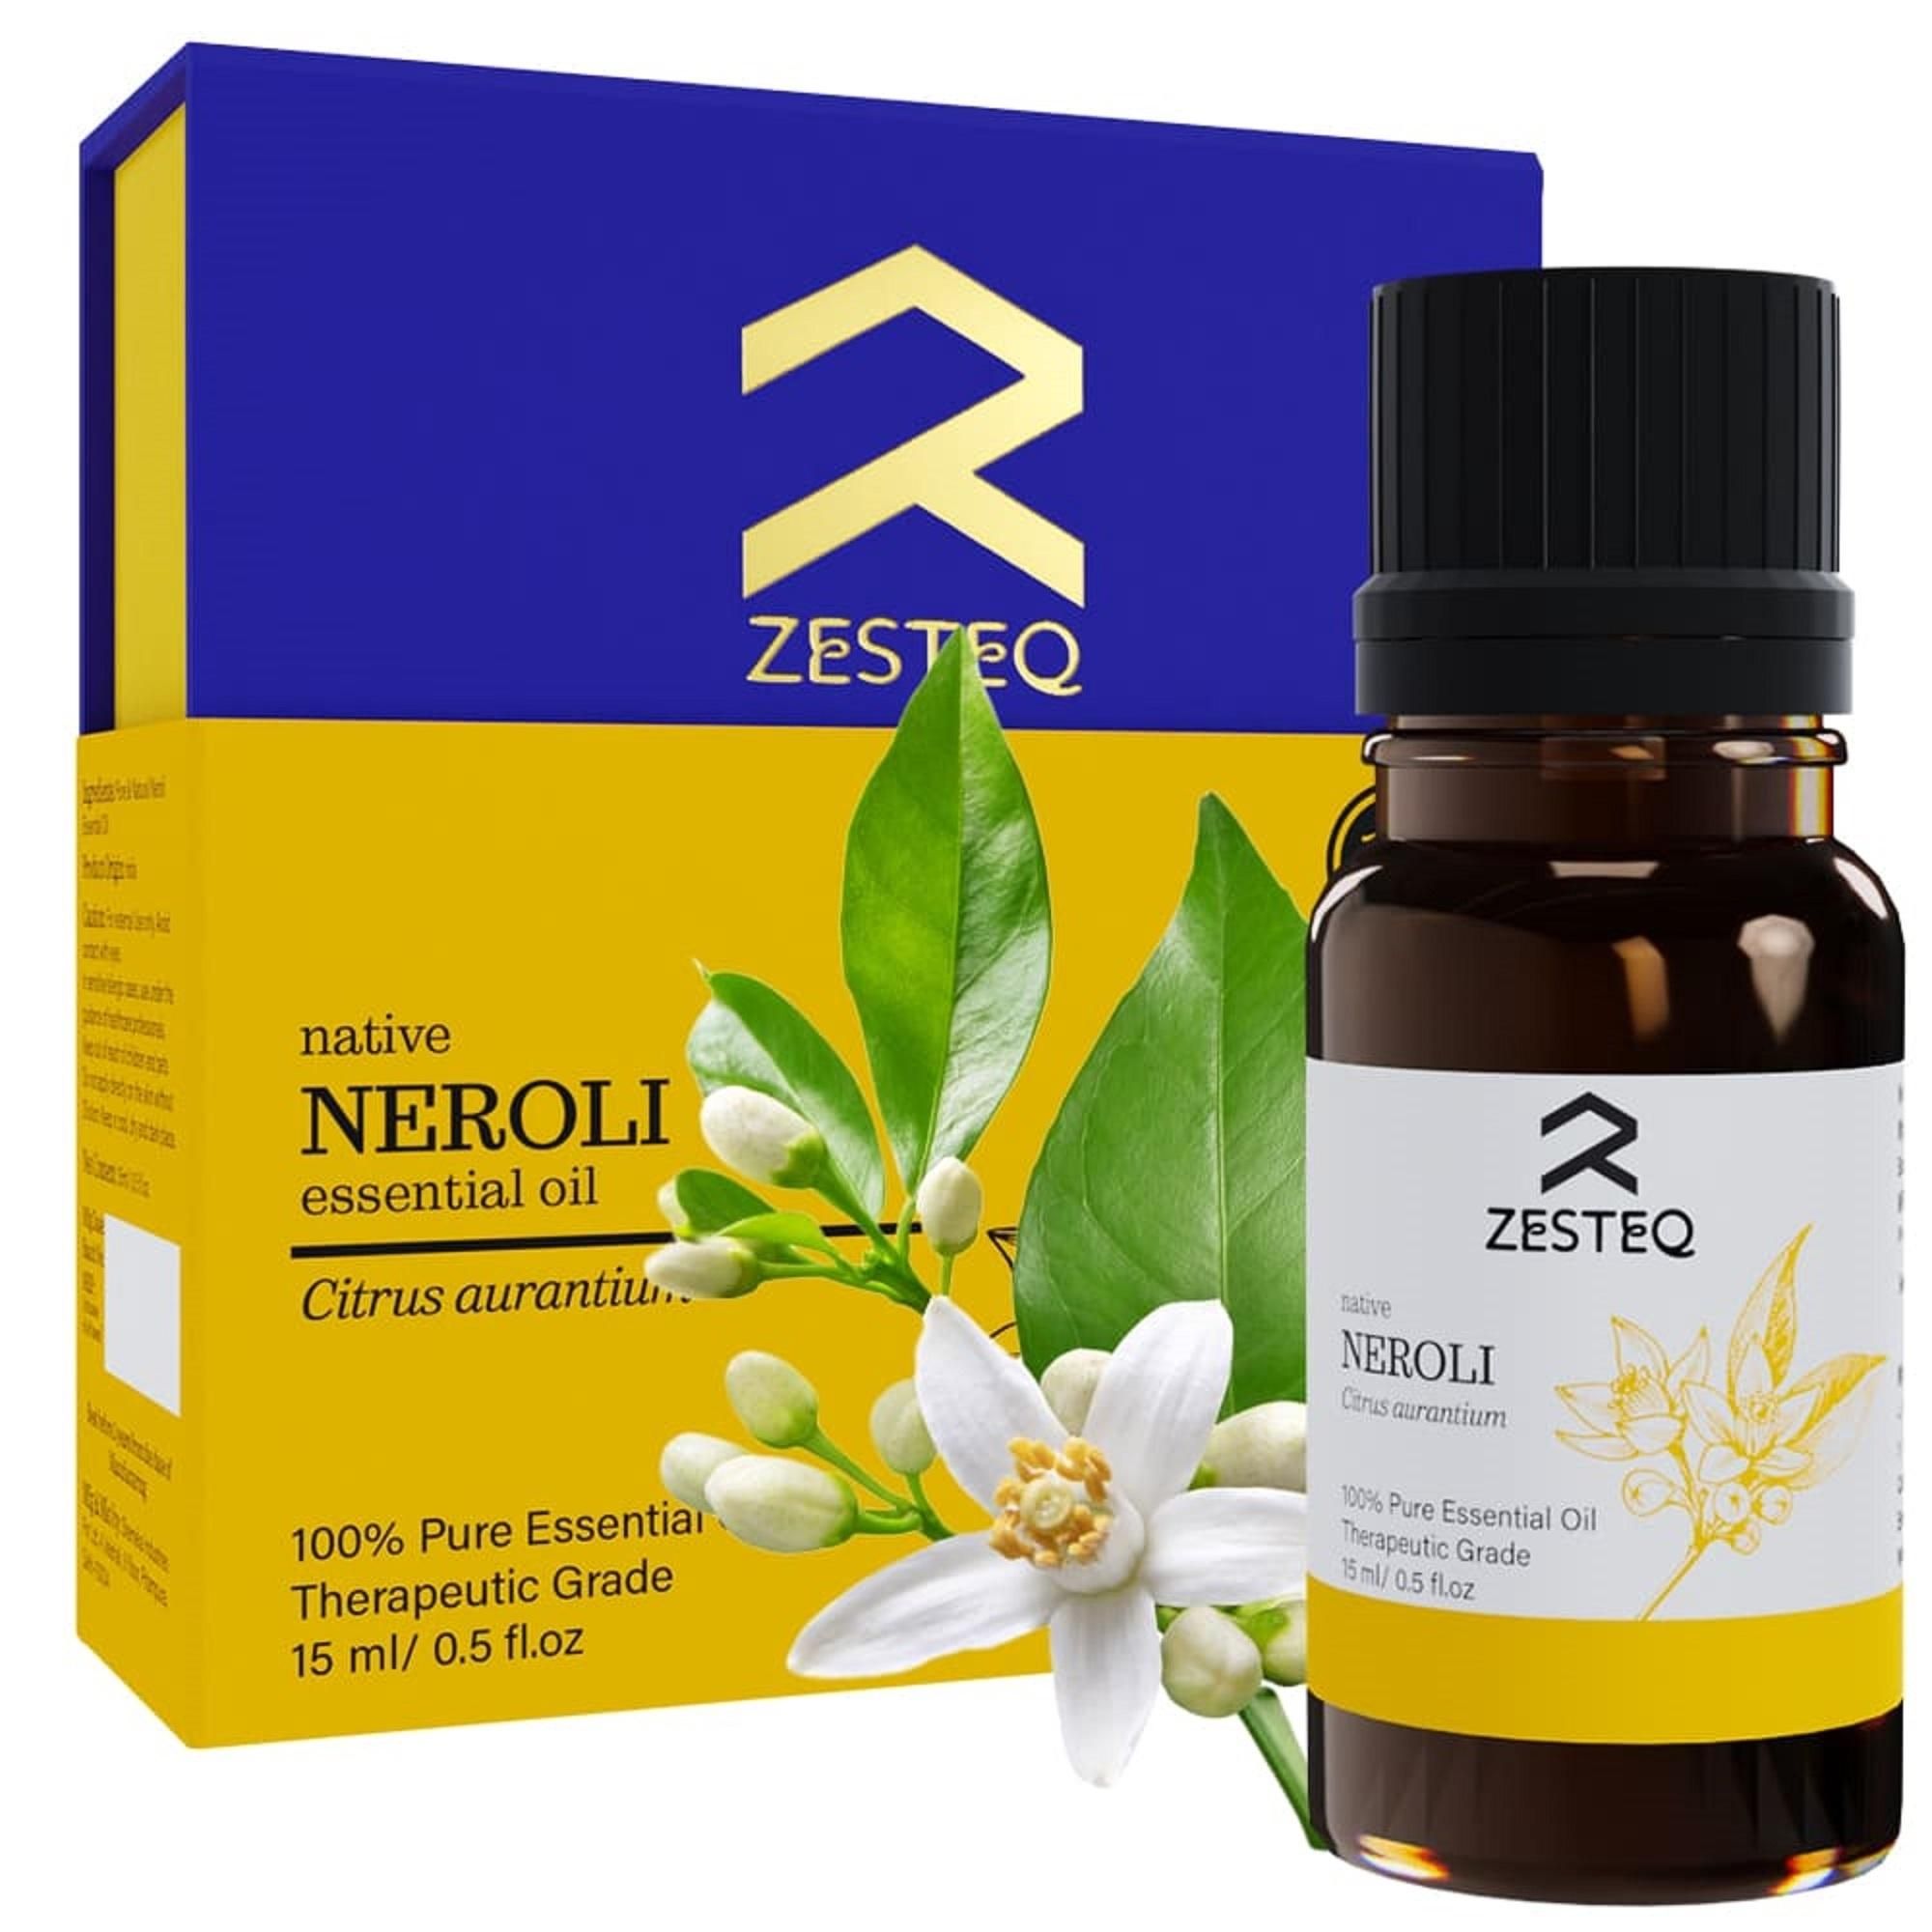 Zesteq Native Neroli Essential Oil Pure & Natural Therapeutic grade (15 ml)